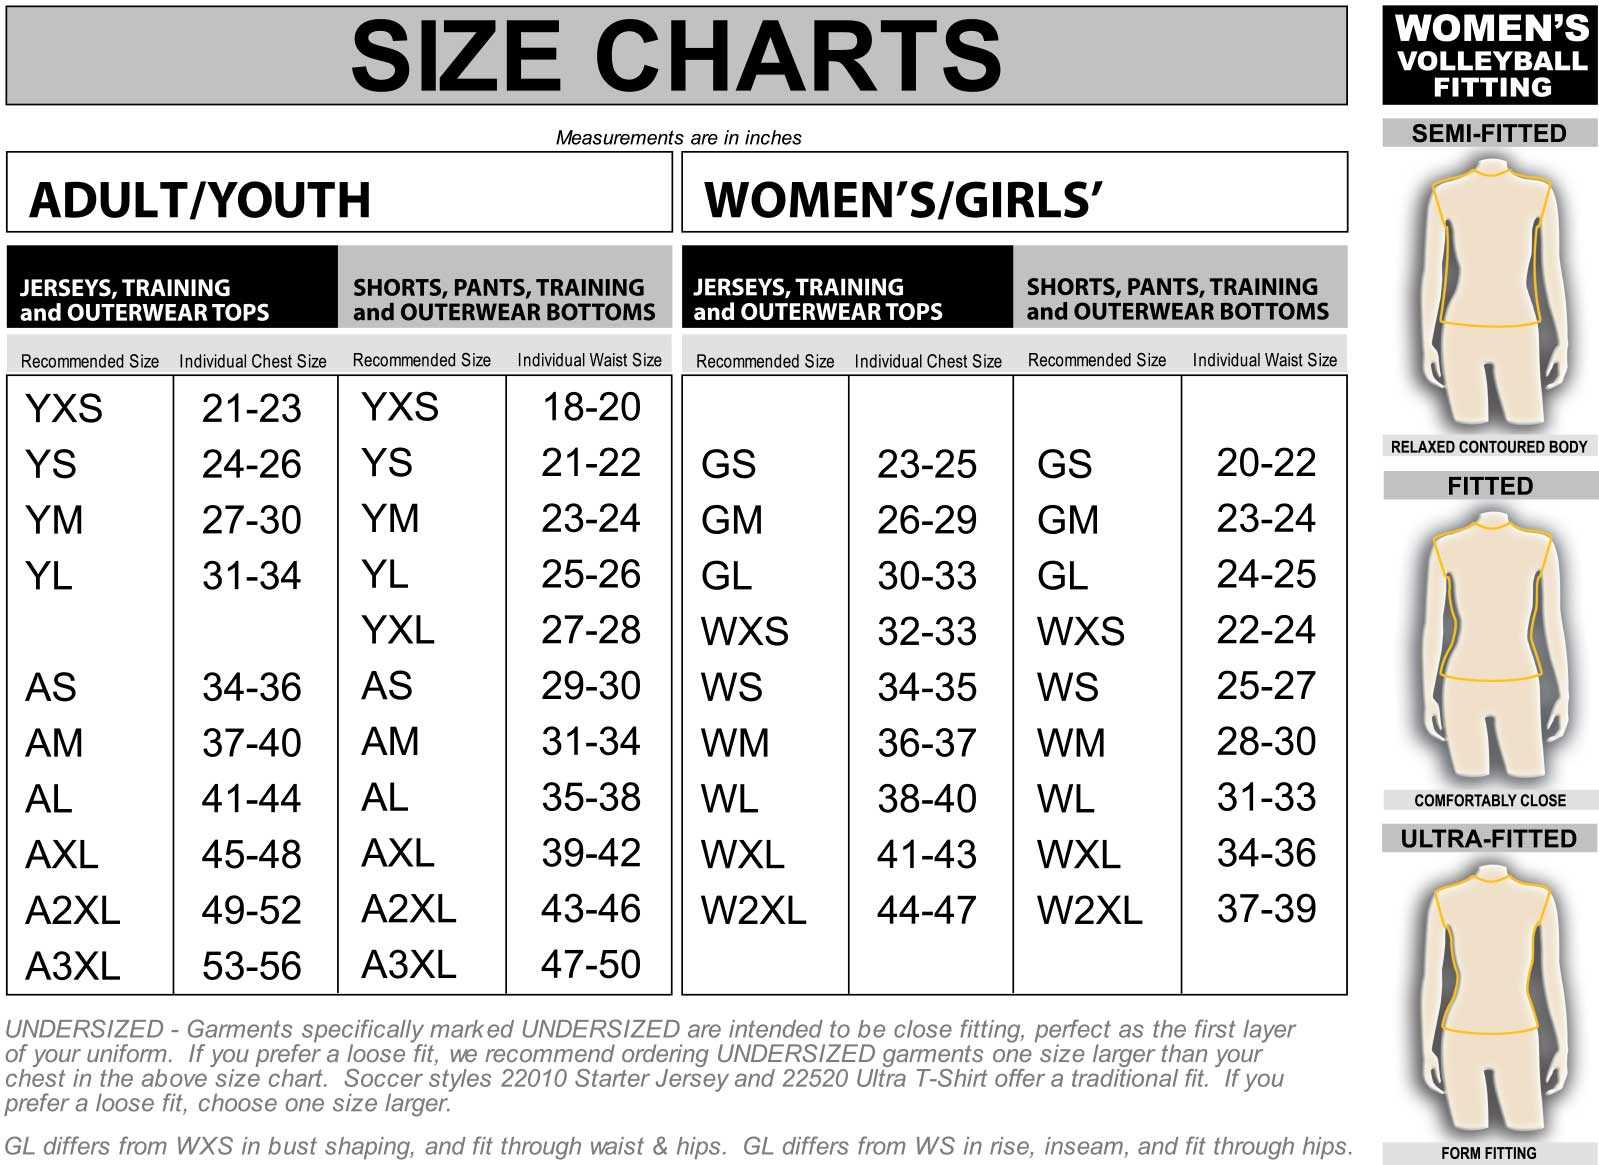 mlb jersey size chart